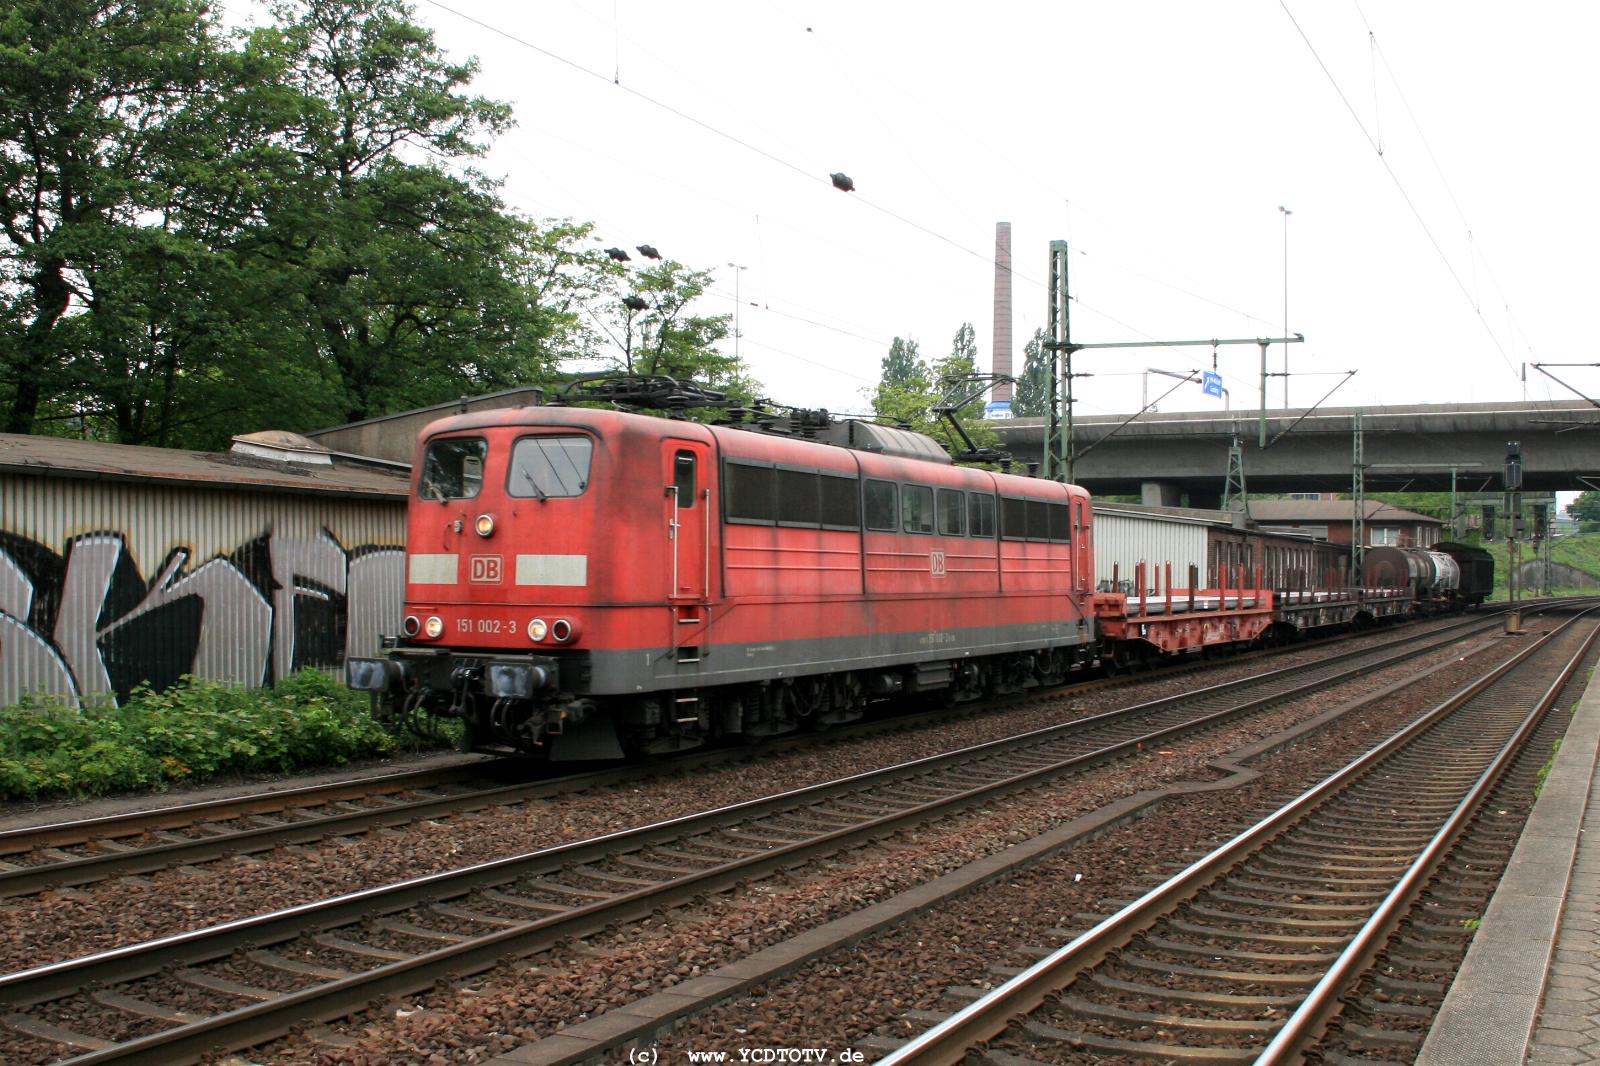  Bahnhof Hamburg-Harburg, 18.05.2011, 15:05 151 002-3 Richtung Sden 